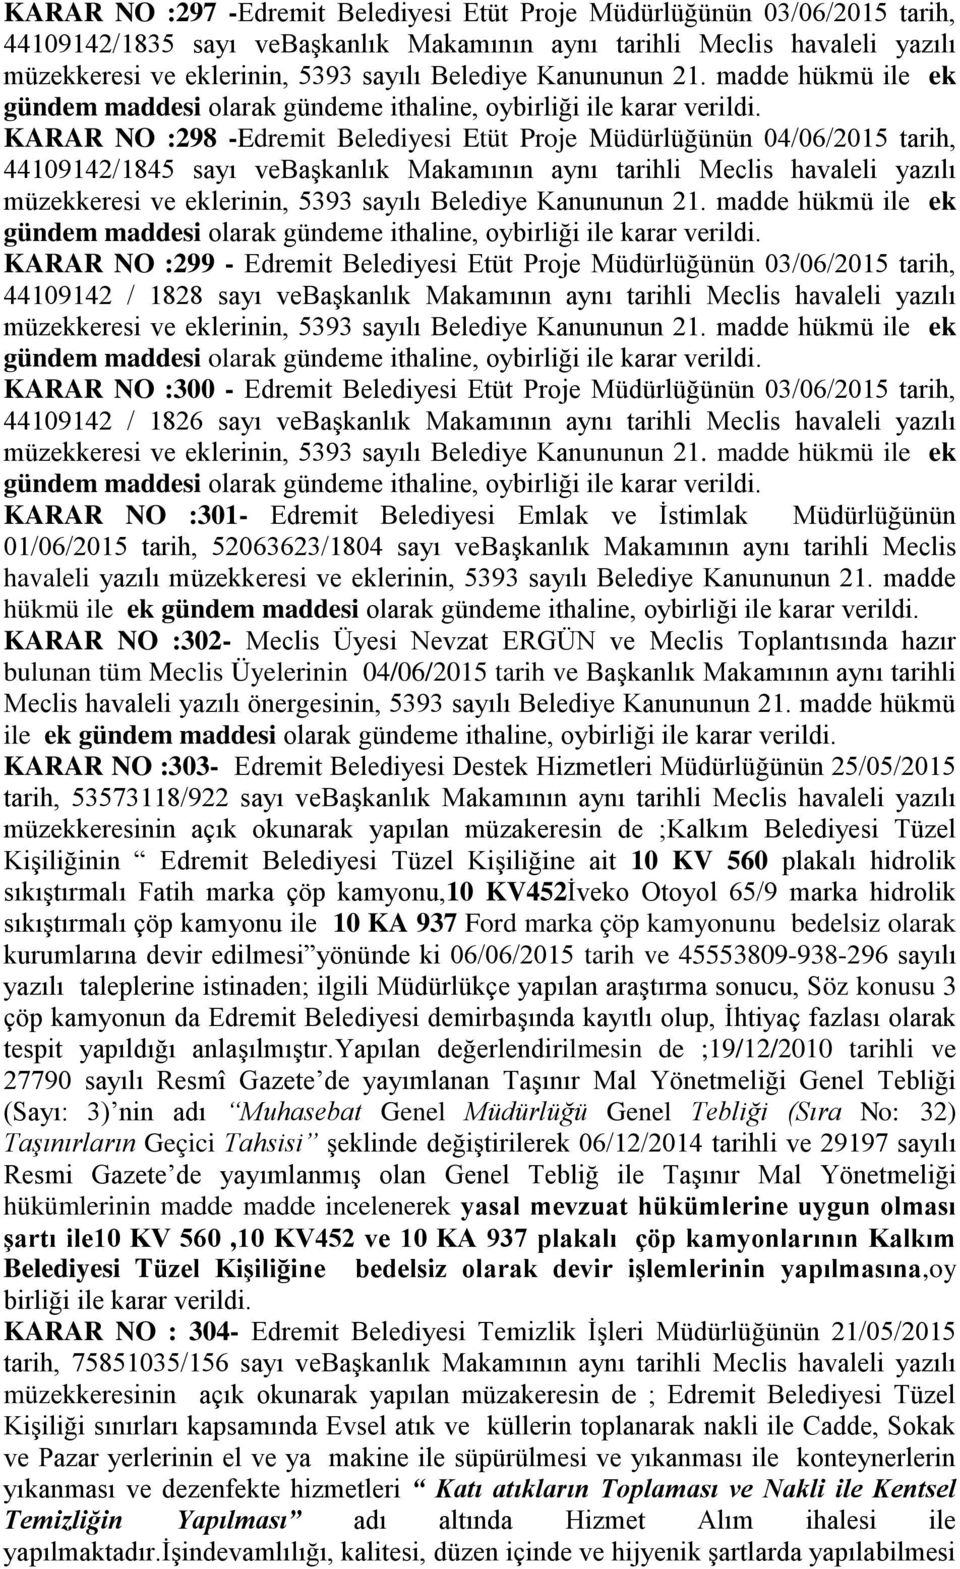 KARAR NO :298 -Edremit Belediyesi Etüt Proje Müdürlüğünün 04/06/2015 tarih, 44109142/1845 sayı vebaģkanlık Makamının aynı tarihli Meclis havaleli yazılı müzekkeresi ve eklerinin, 5393 sayılı Belediye